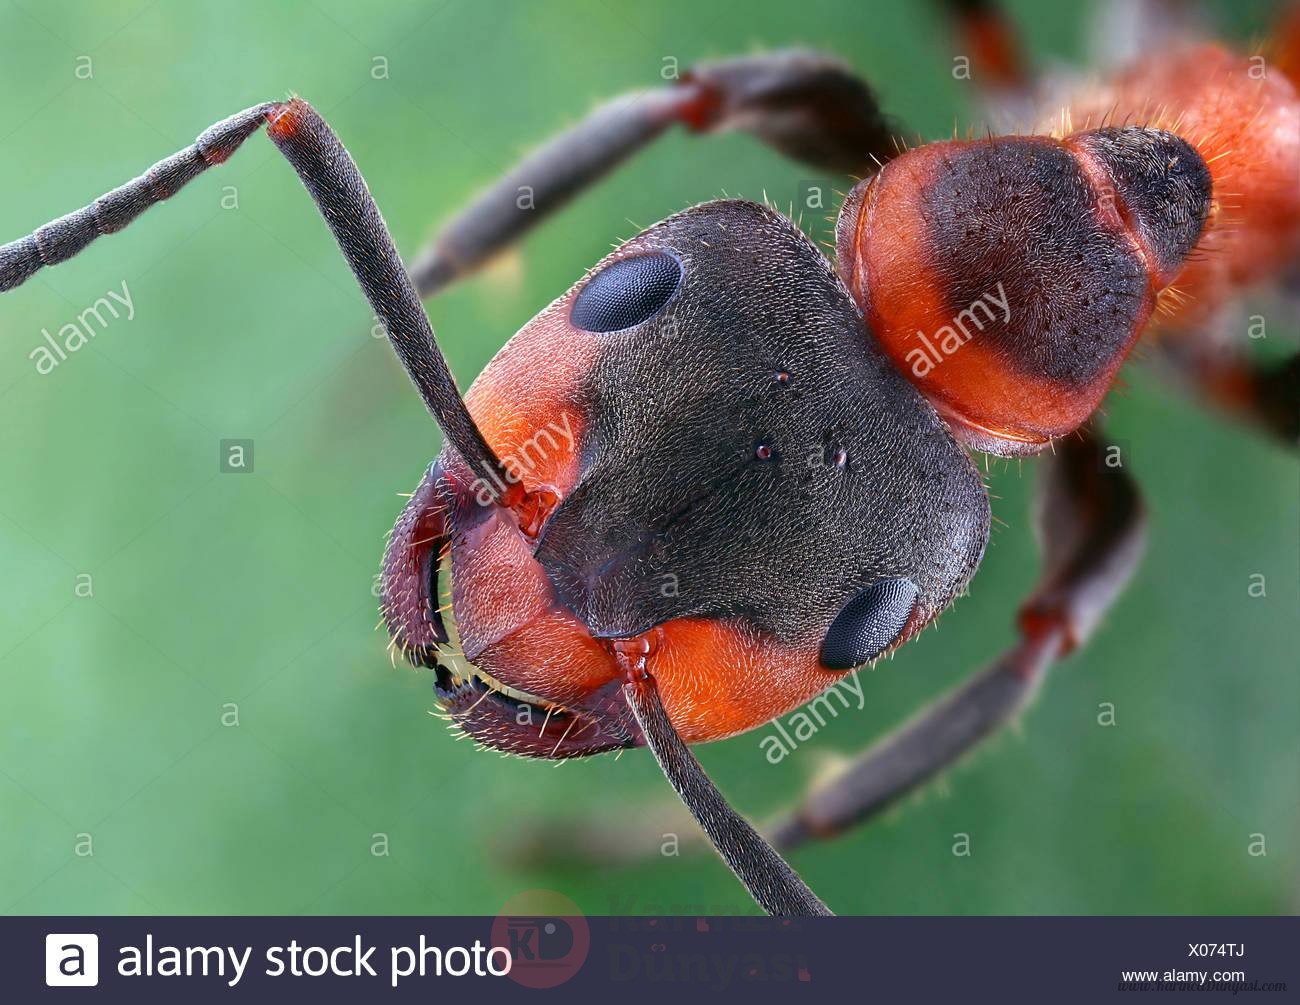 european-red-wood-ant-formica-pratensis-head-top-view-germany-X074TJ.jpg